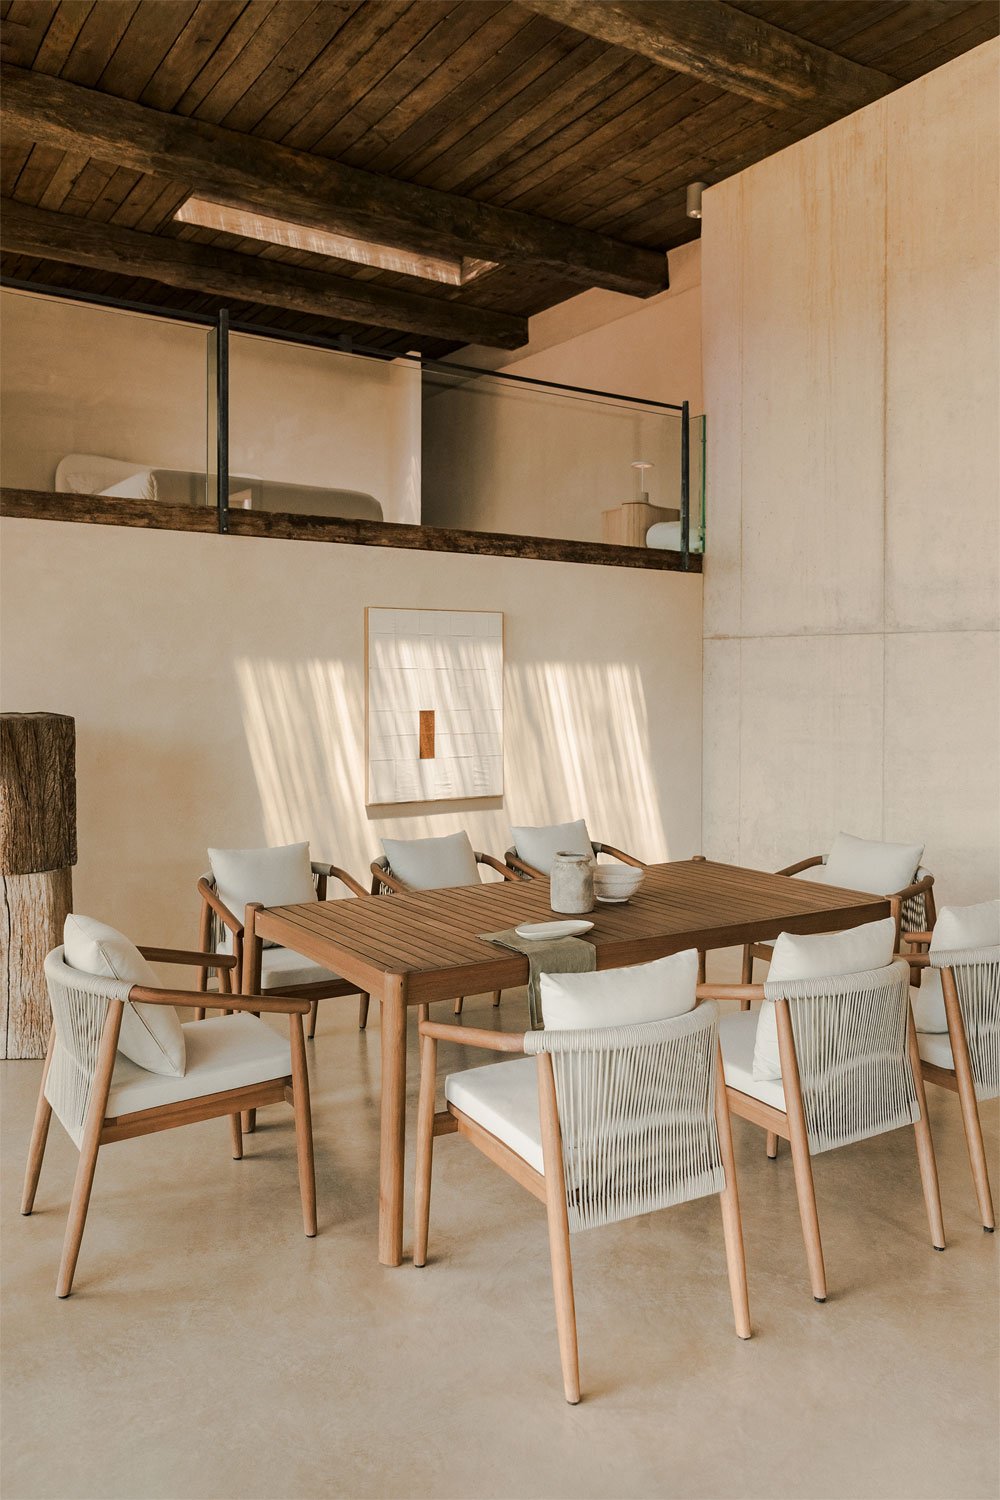 Rechthoekige tafelset (200x100 cm) en 8 eetkamerstoelen met armleuningen in eucalyptushout Aderyn, galerij beeld 1